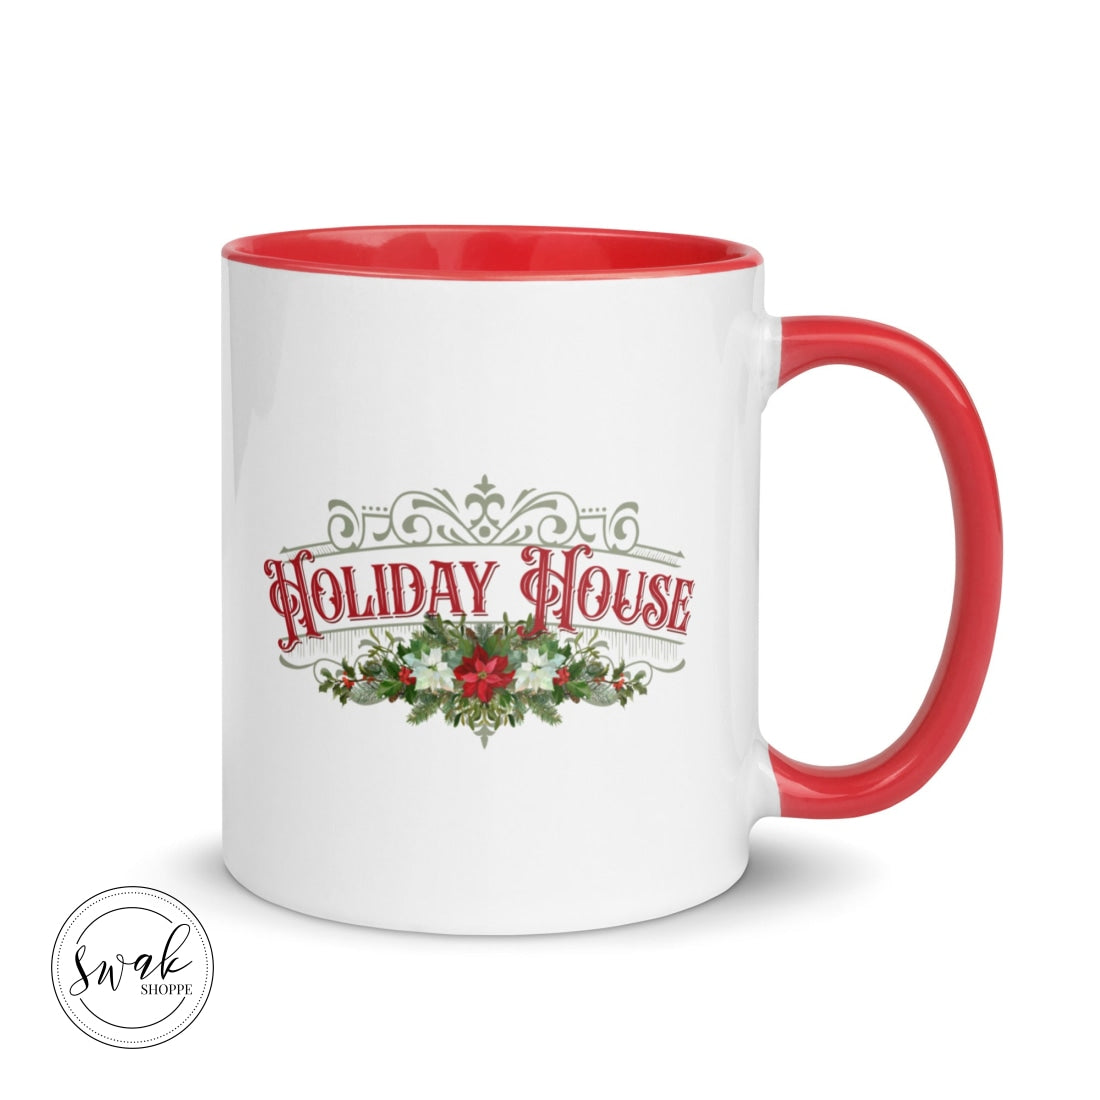 Holiday House Olde Time Sign Mug Red Mugs